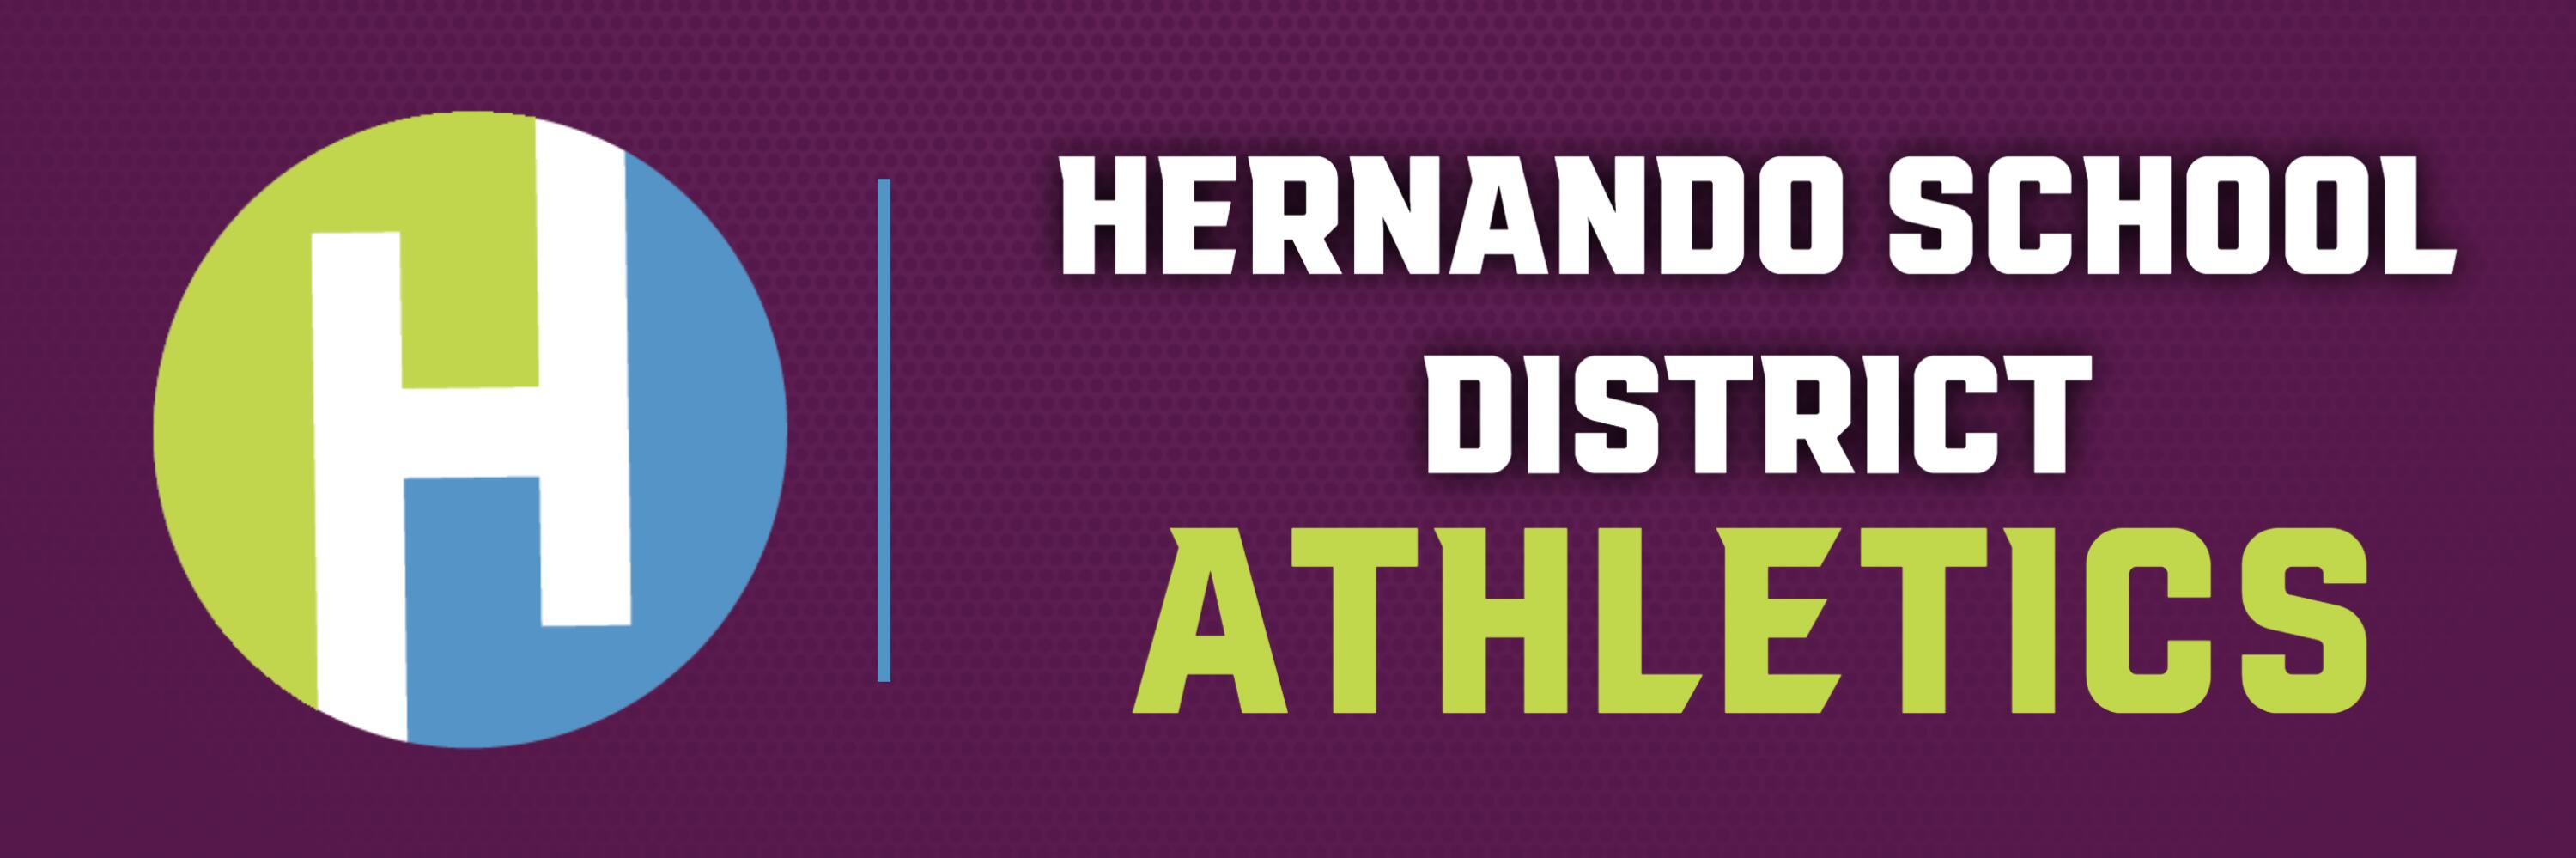 Hernando School District Athletics